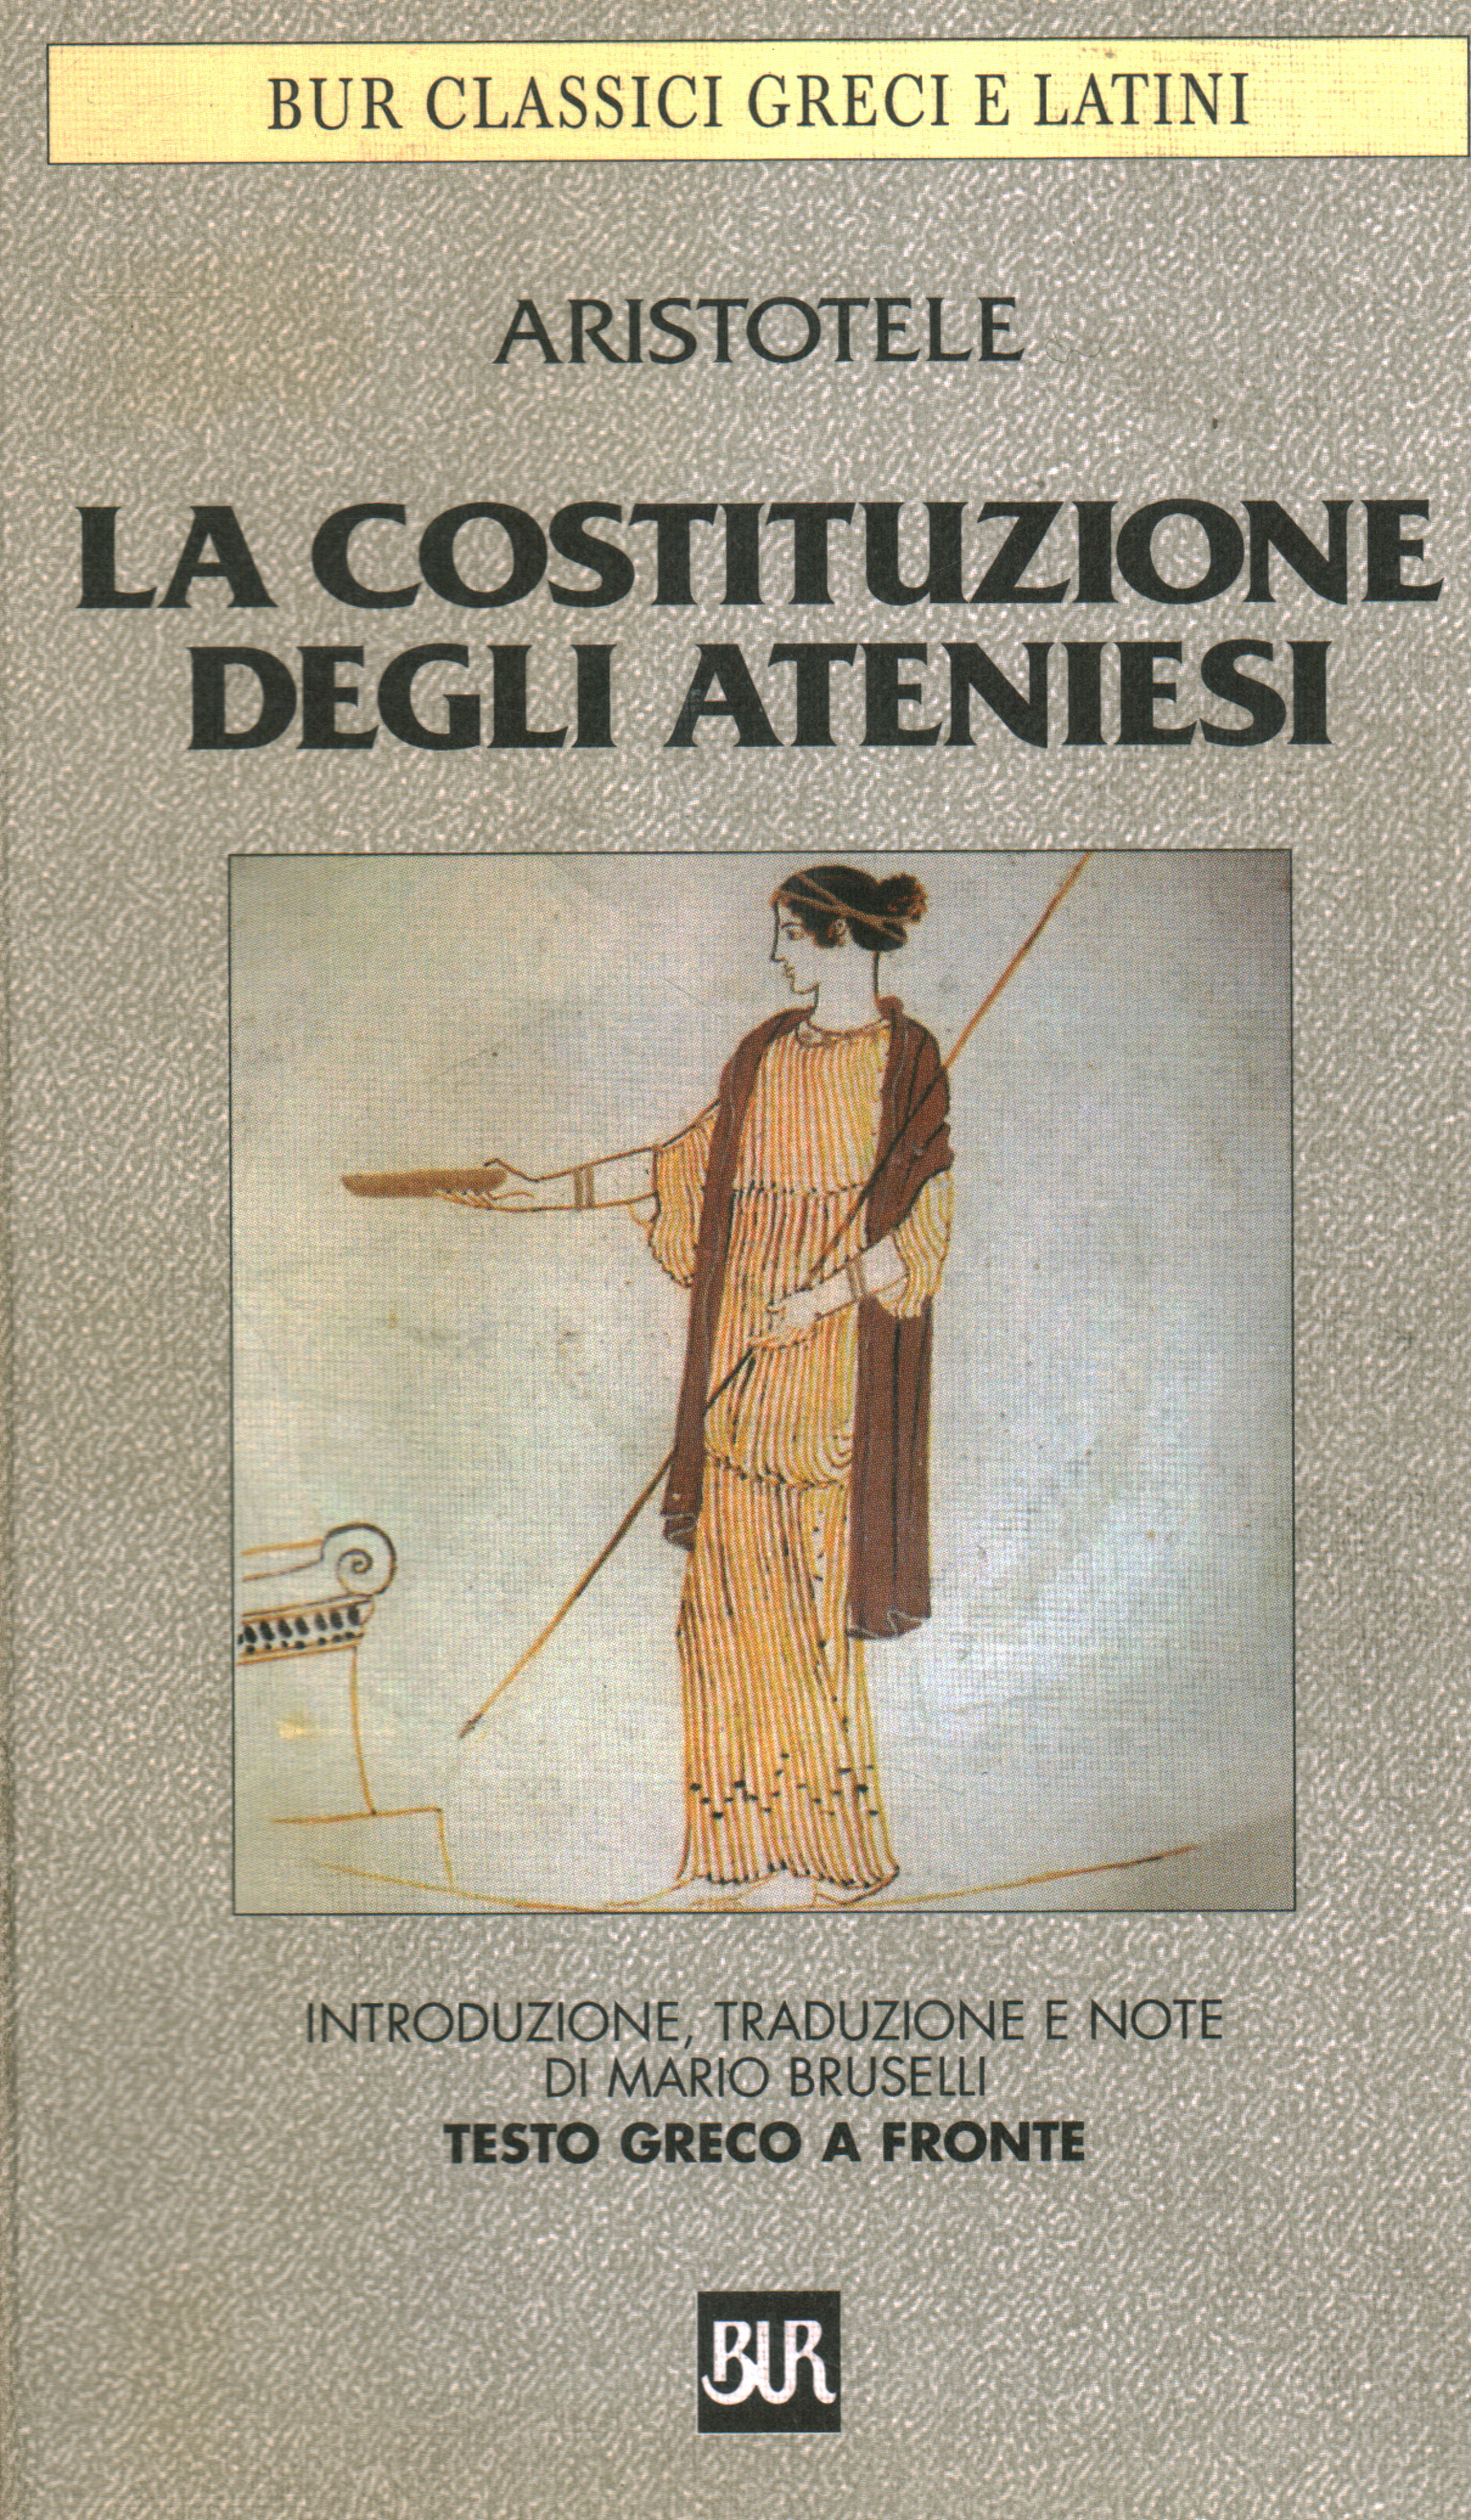 La costituzione degli ateniesi, Aristotele